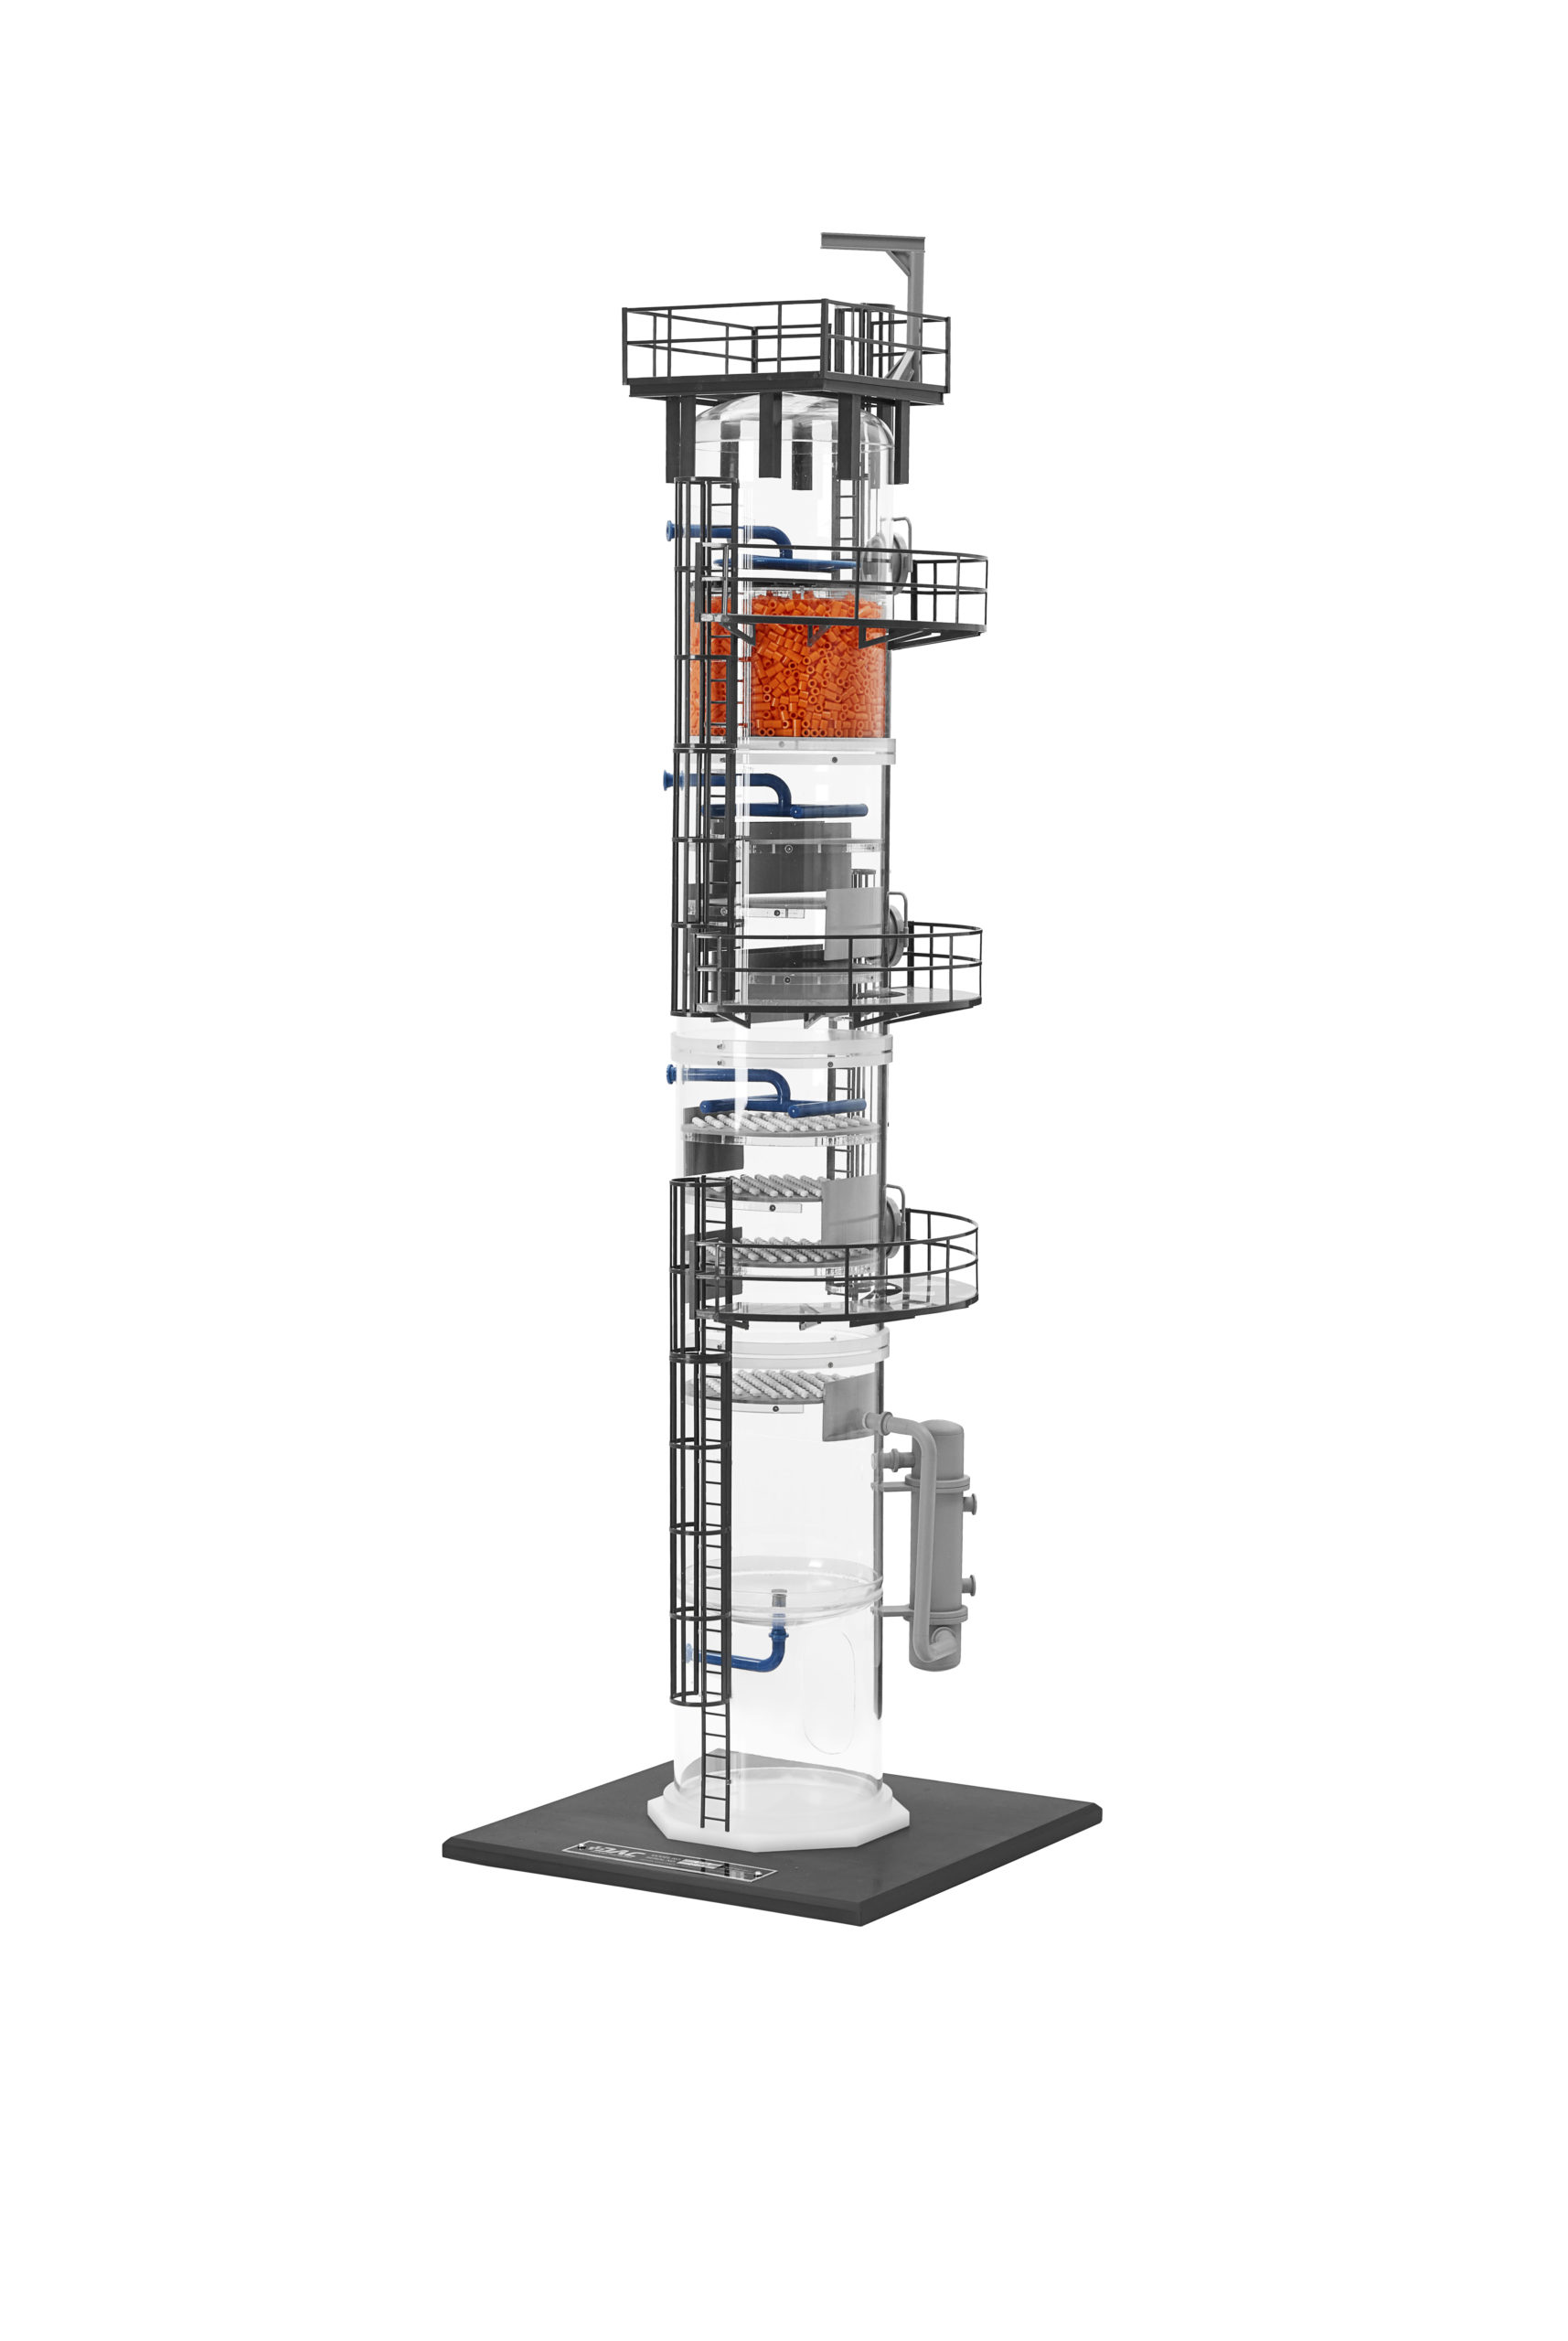 Distillation Column Model